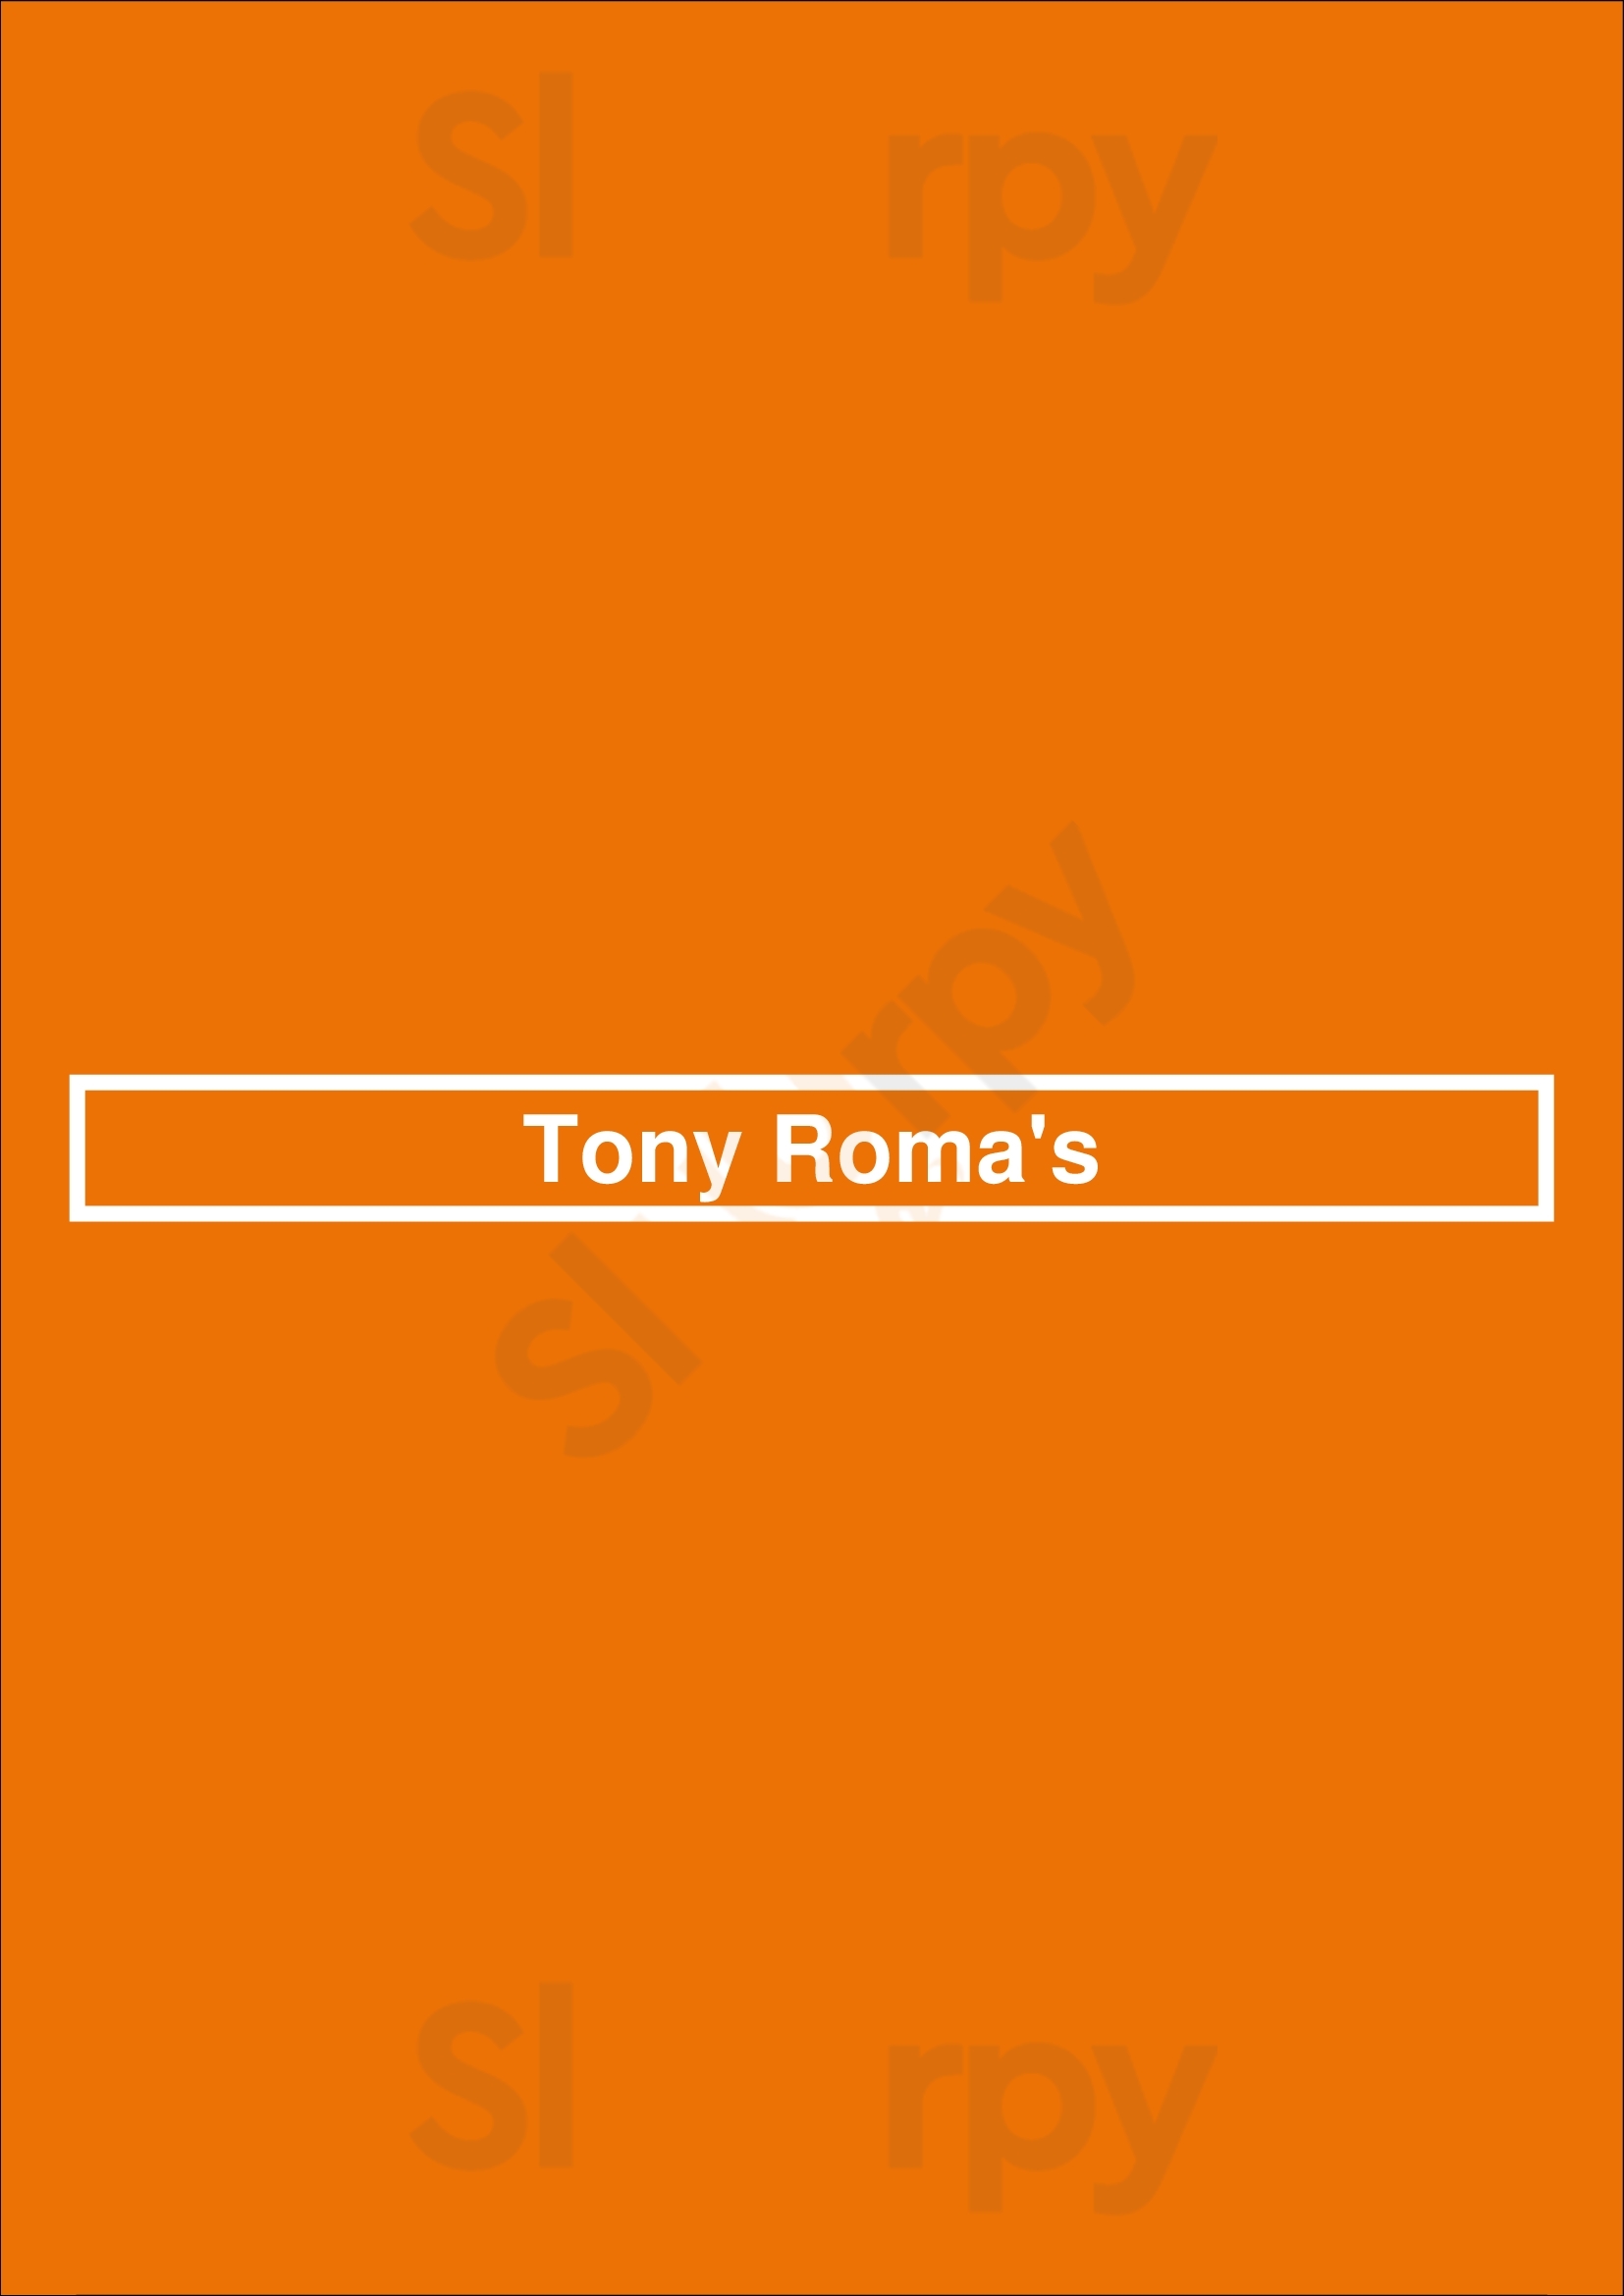 Tony Roma's Madrid Menu - 1